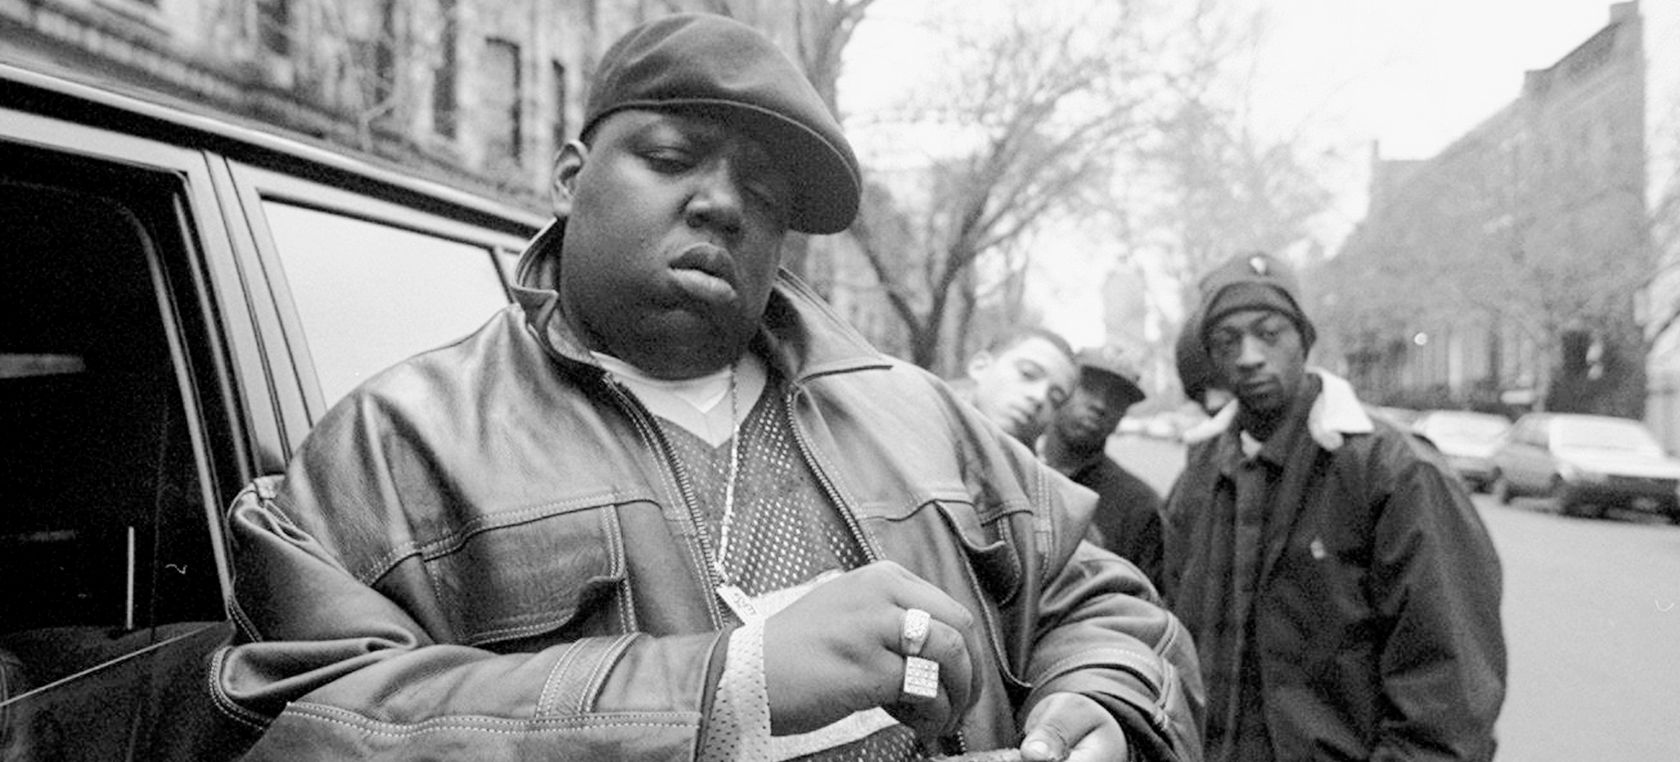 Quién mató a The Notorious B.I.G y otras controversias sobre la muerte del rapero y su relación con Tupac